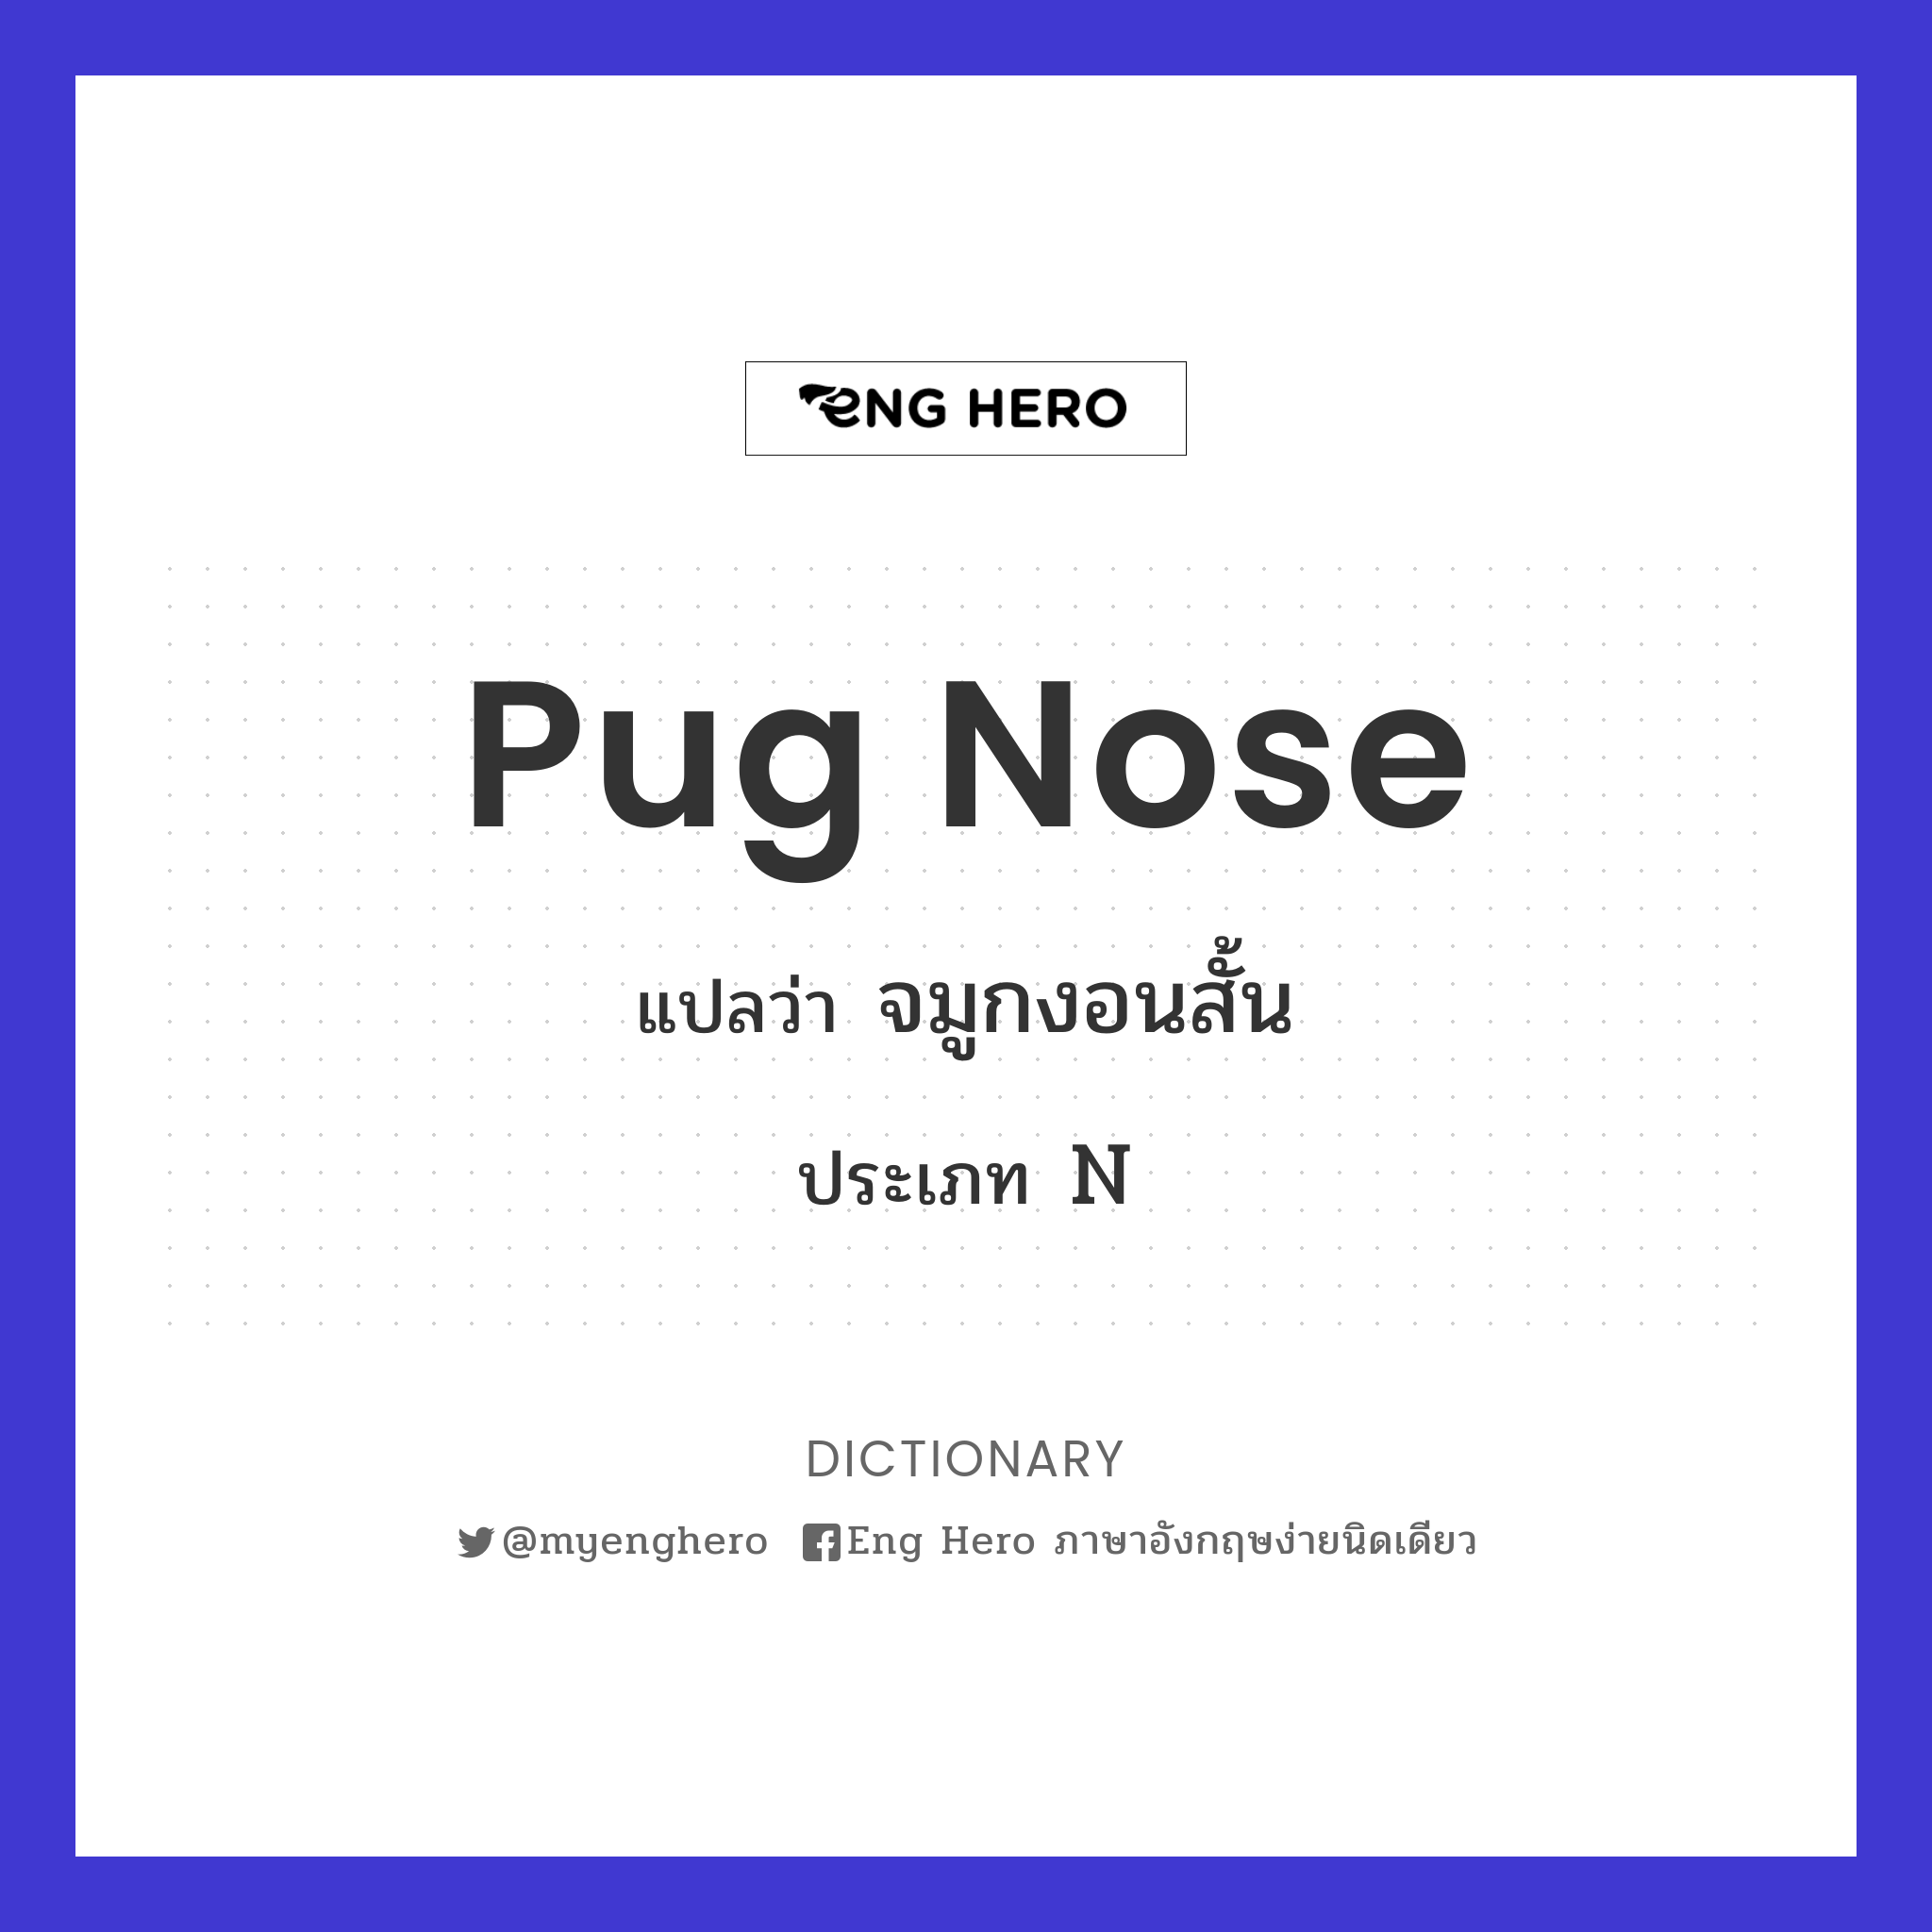 pug nose